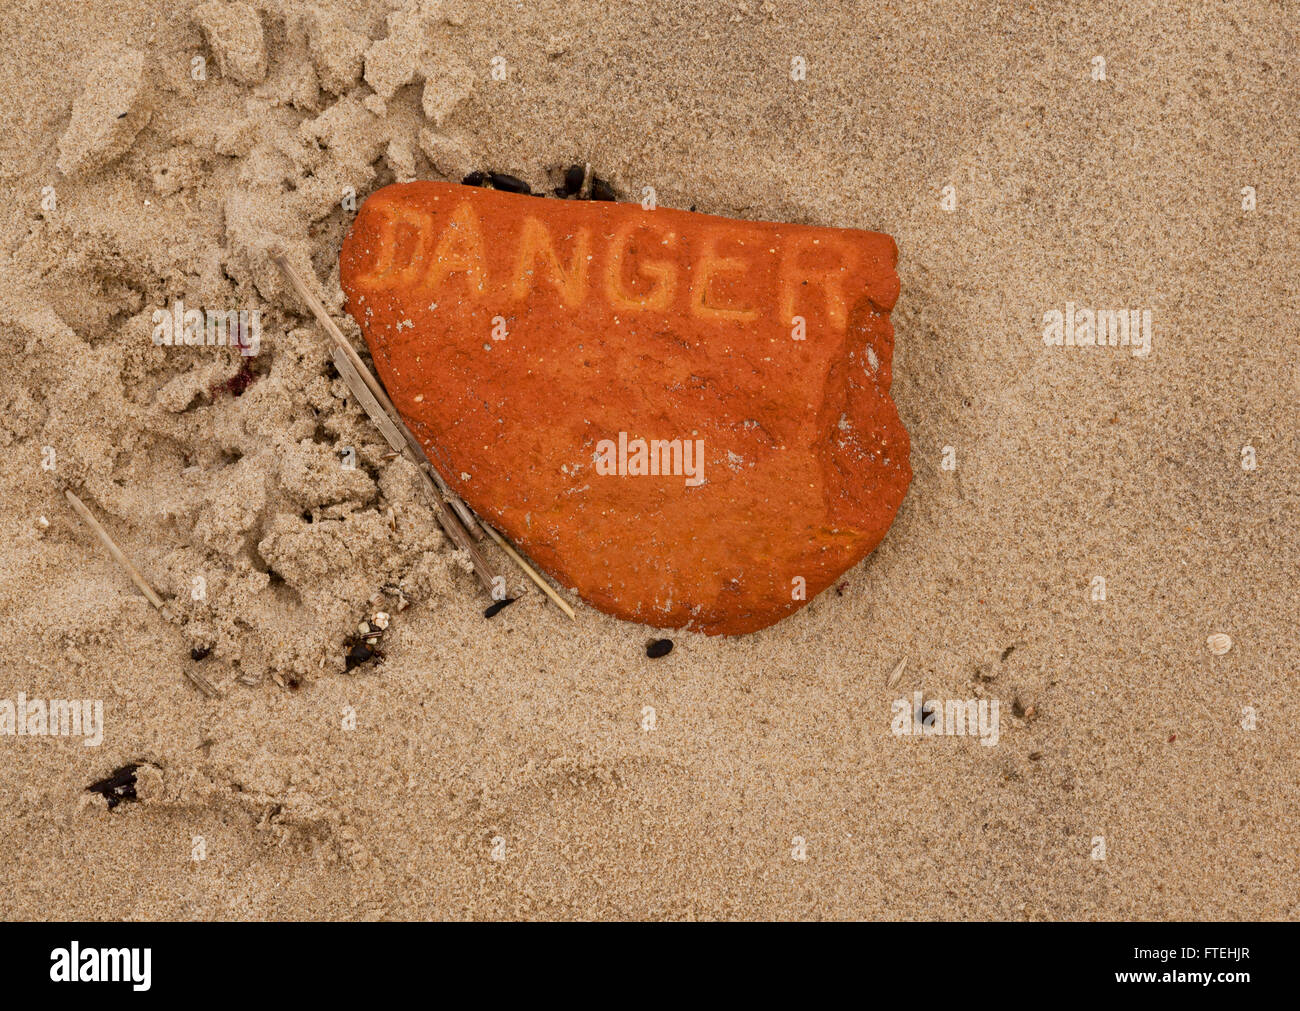 Le mot "danger" imprimé sur un morceau d'une brique dans le sable d'une plage Banque D'Images